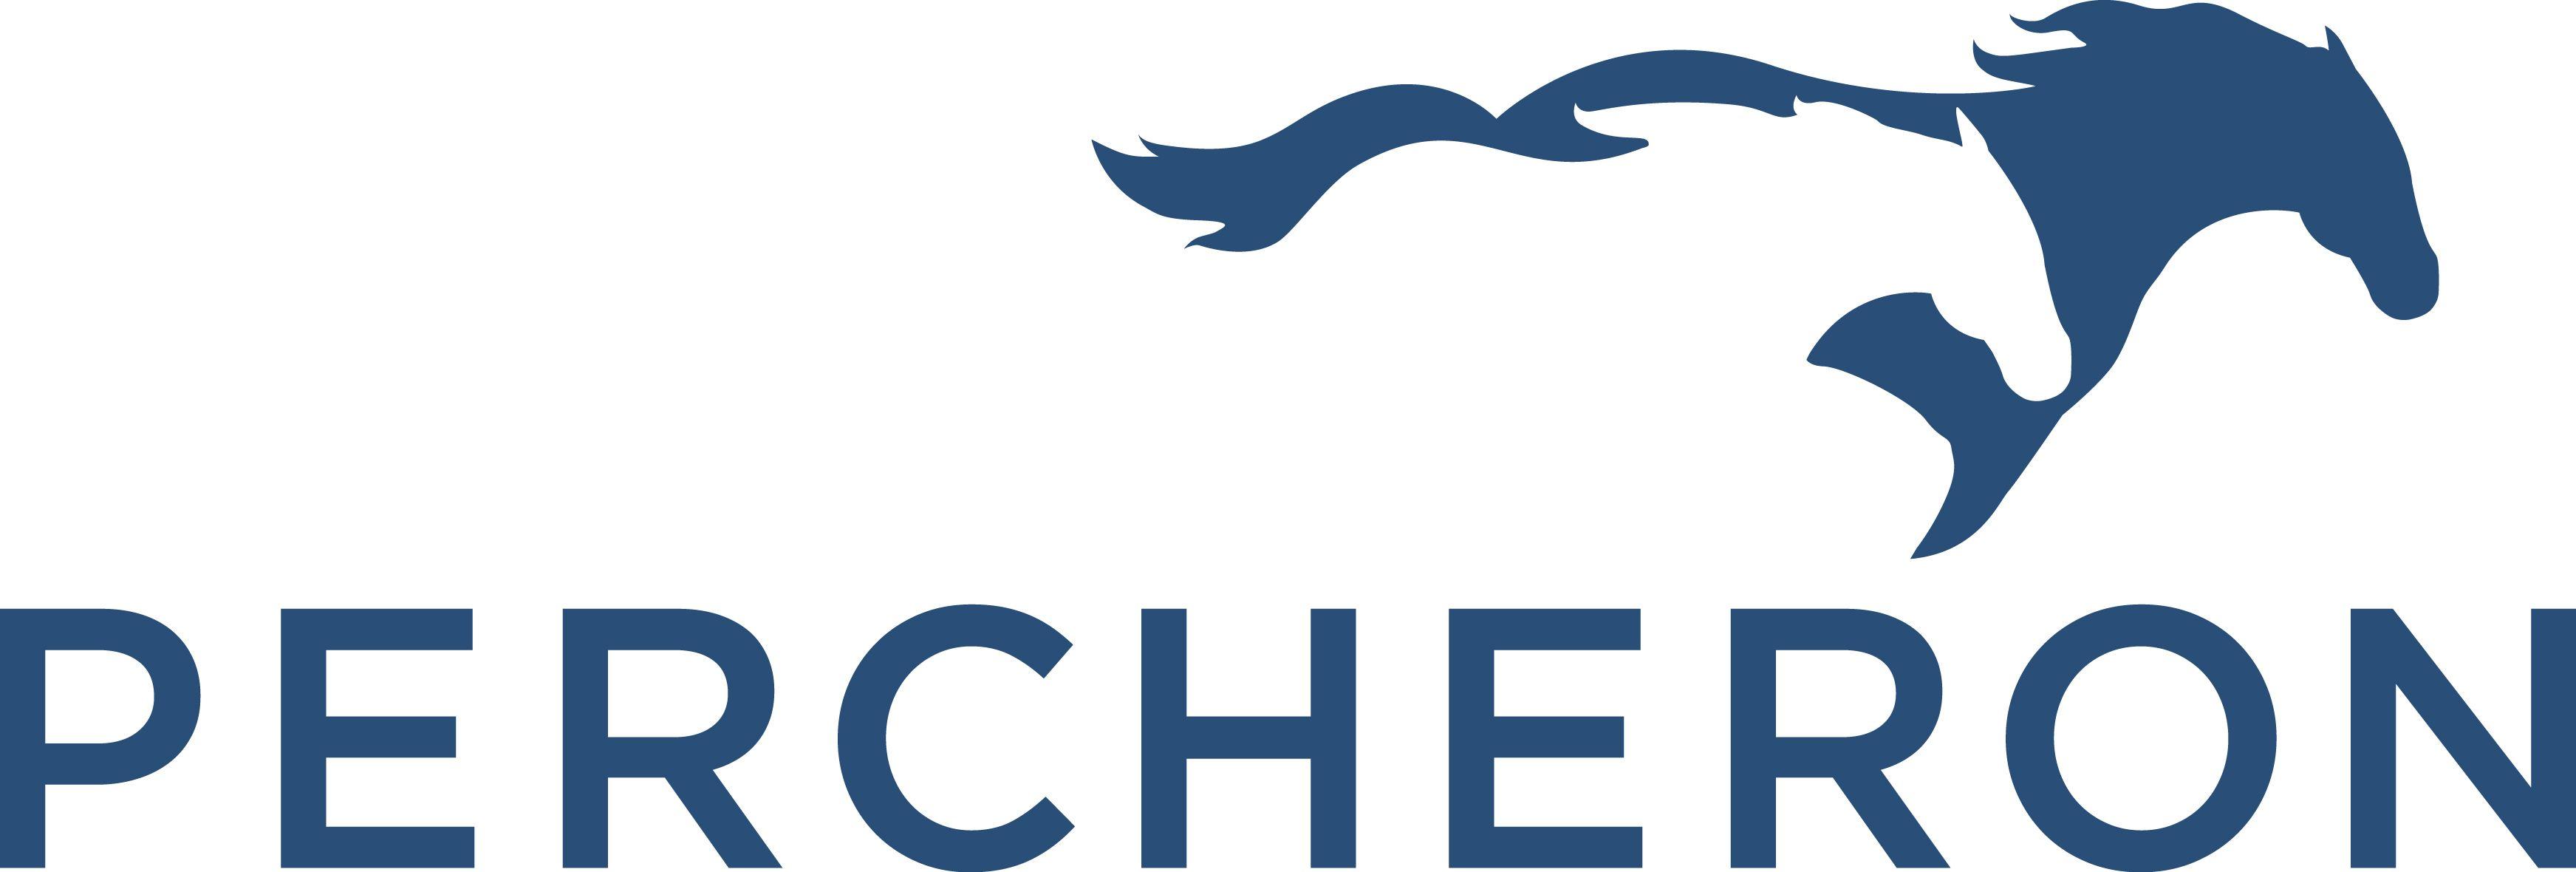 Percheron Logo - Percheron LLC & Events Dixon Energy, OGM Land